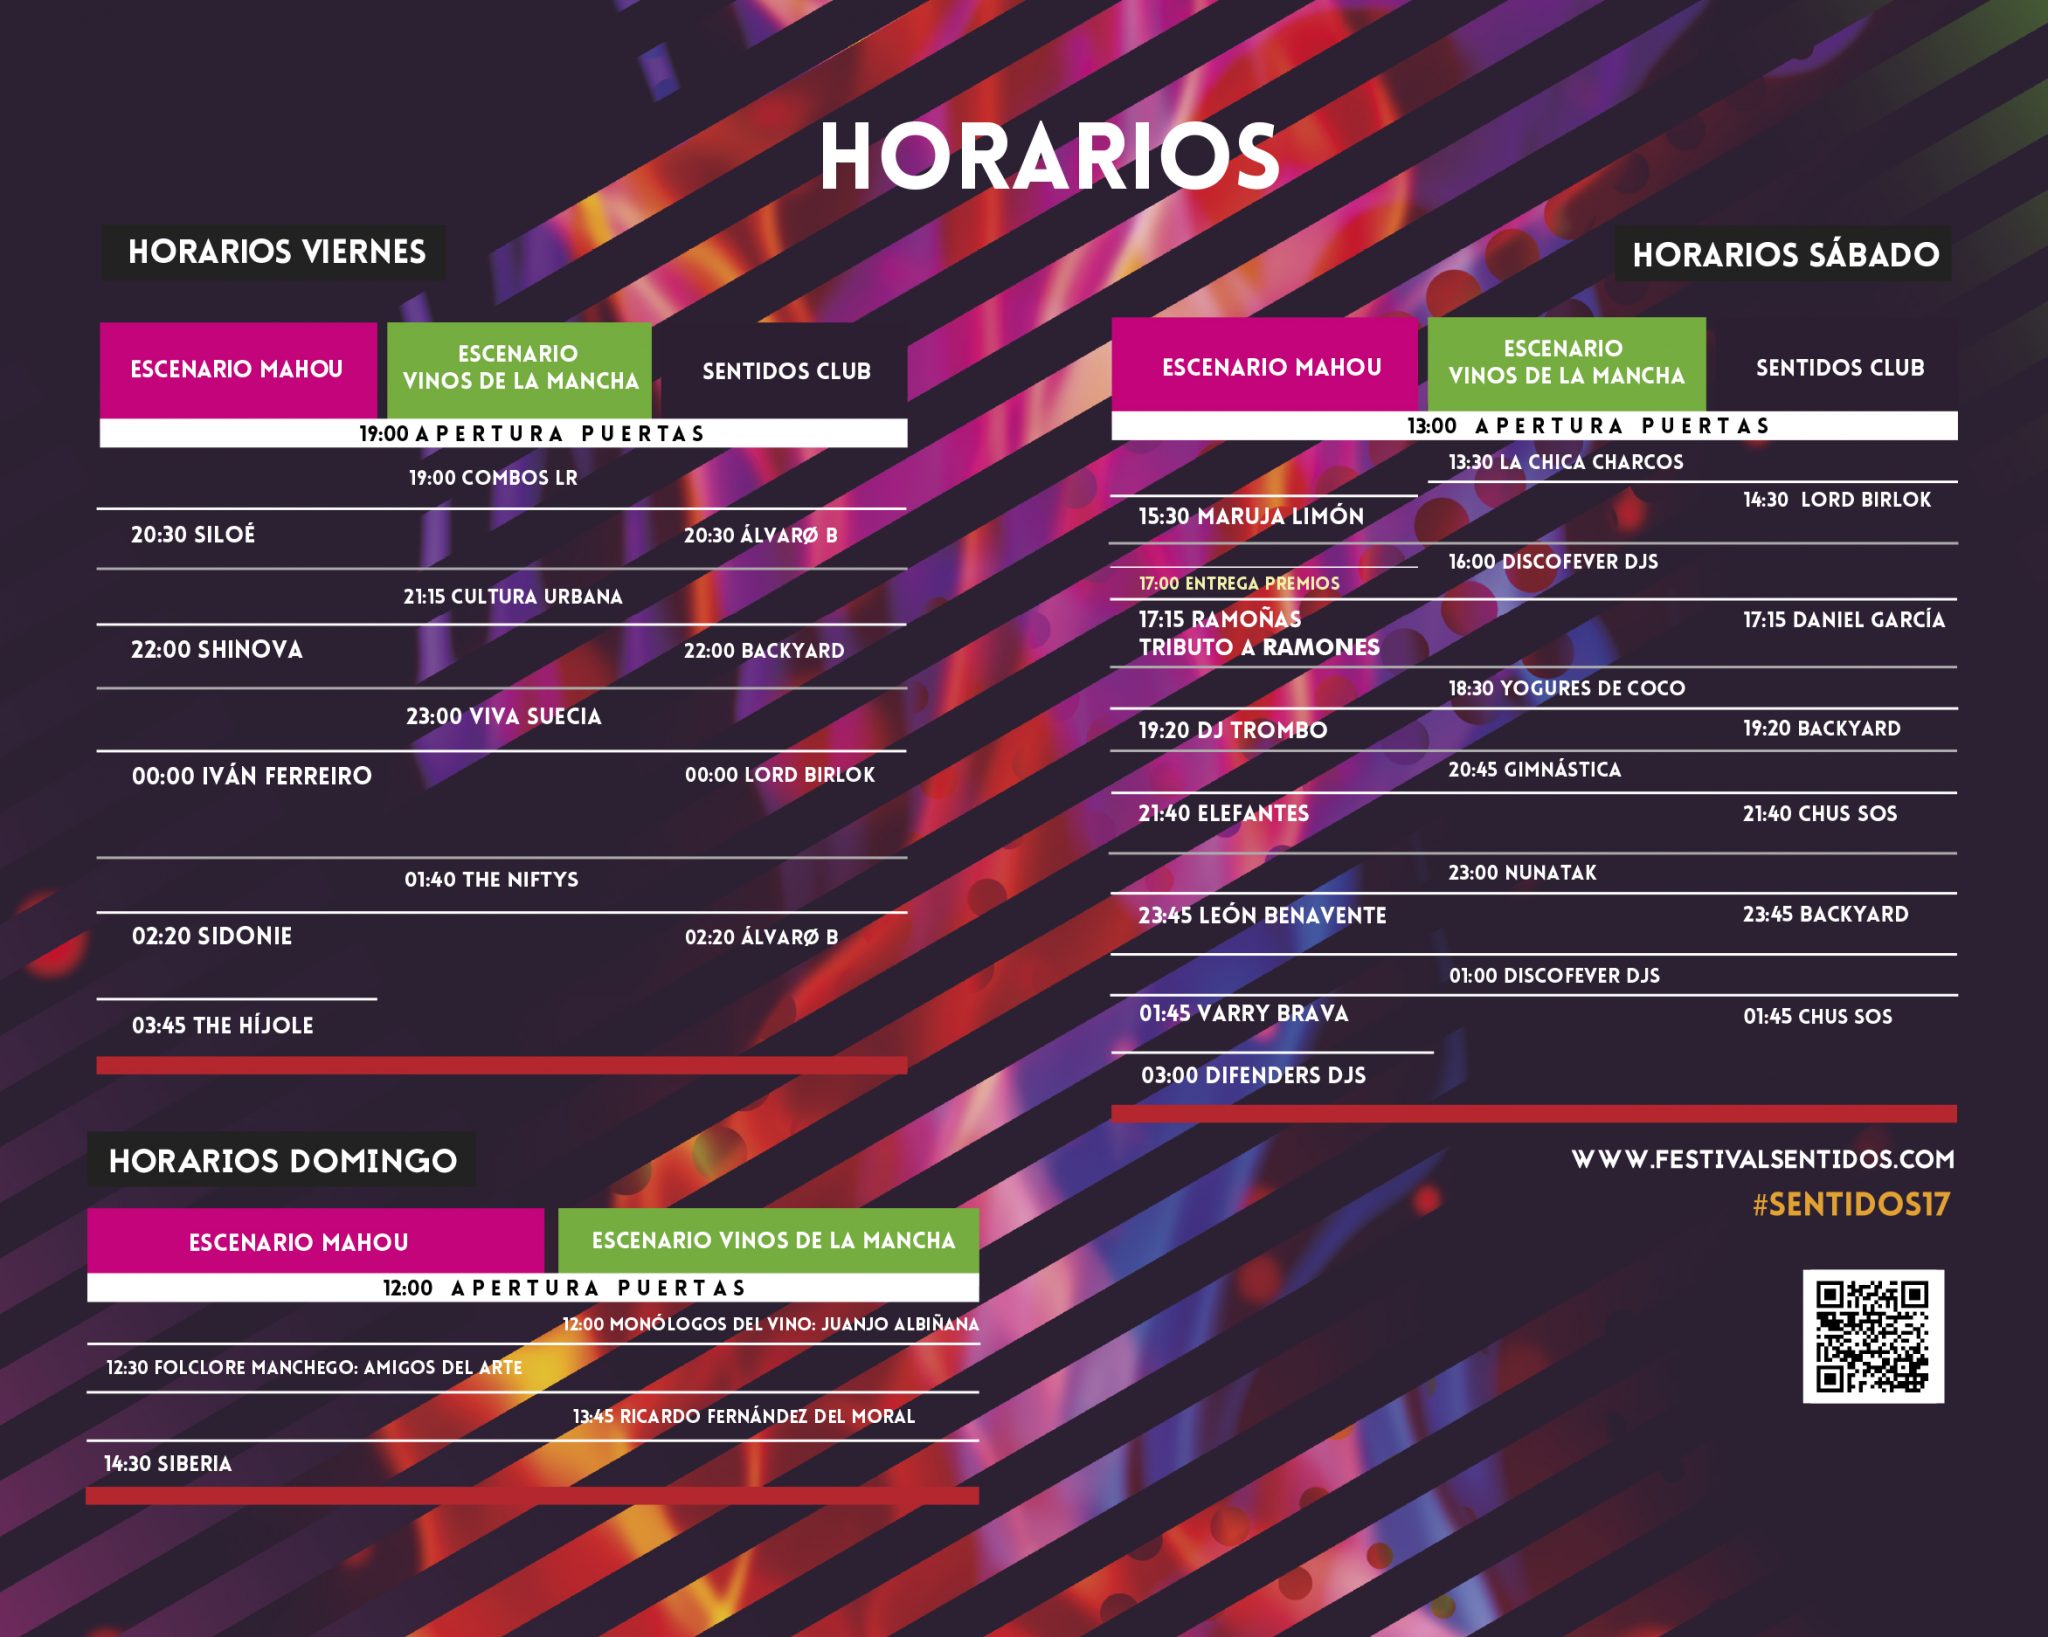 HorariosSentidos17 (2)